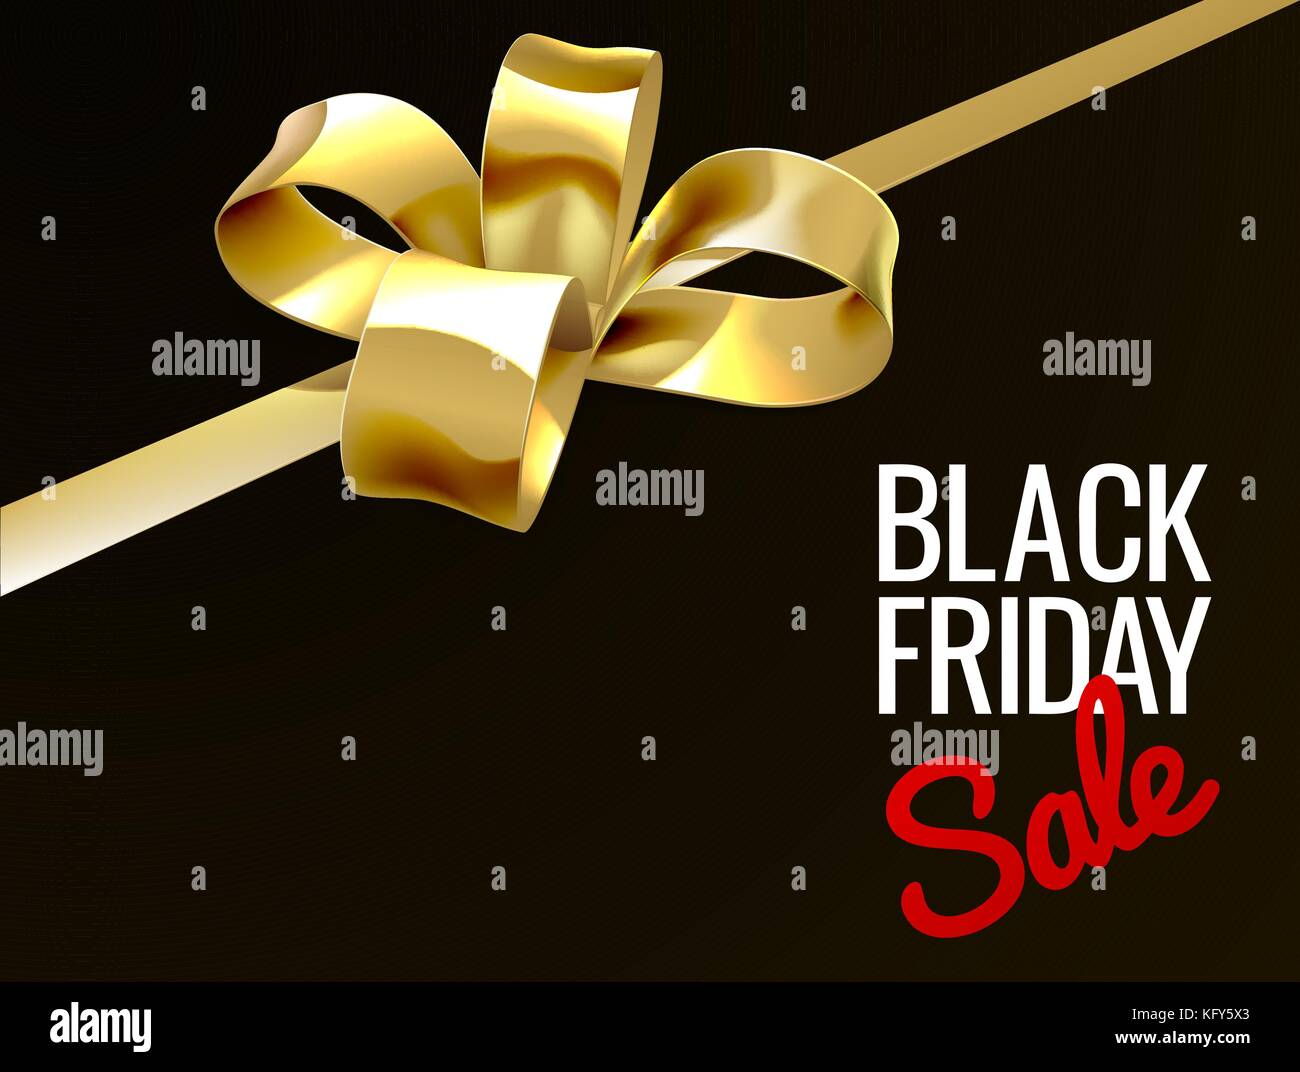 Black Friday Sale Gold Geschenk Bogen Zeichen Stock Vektor